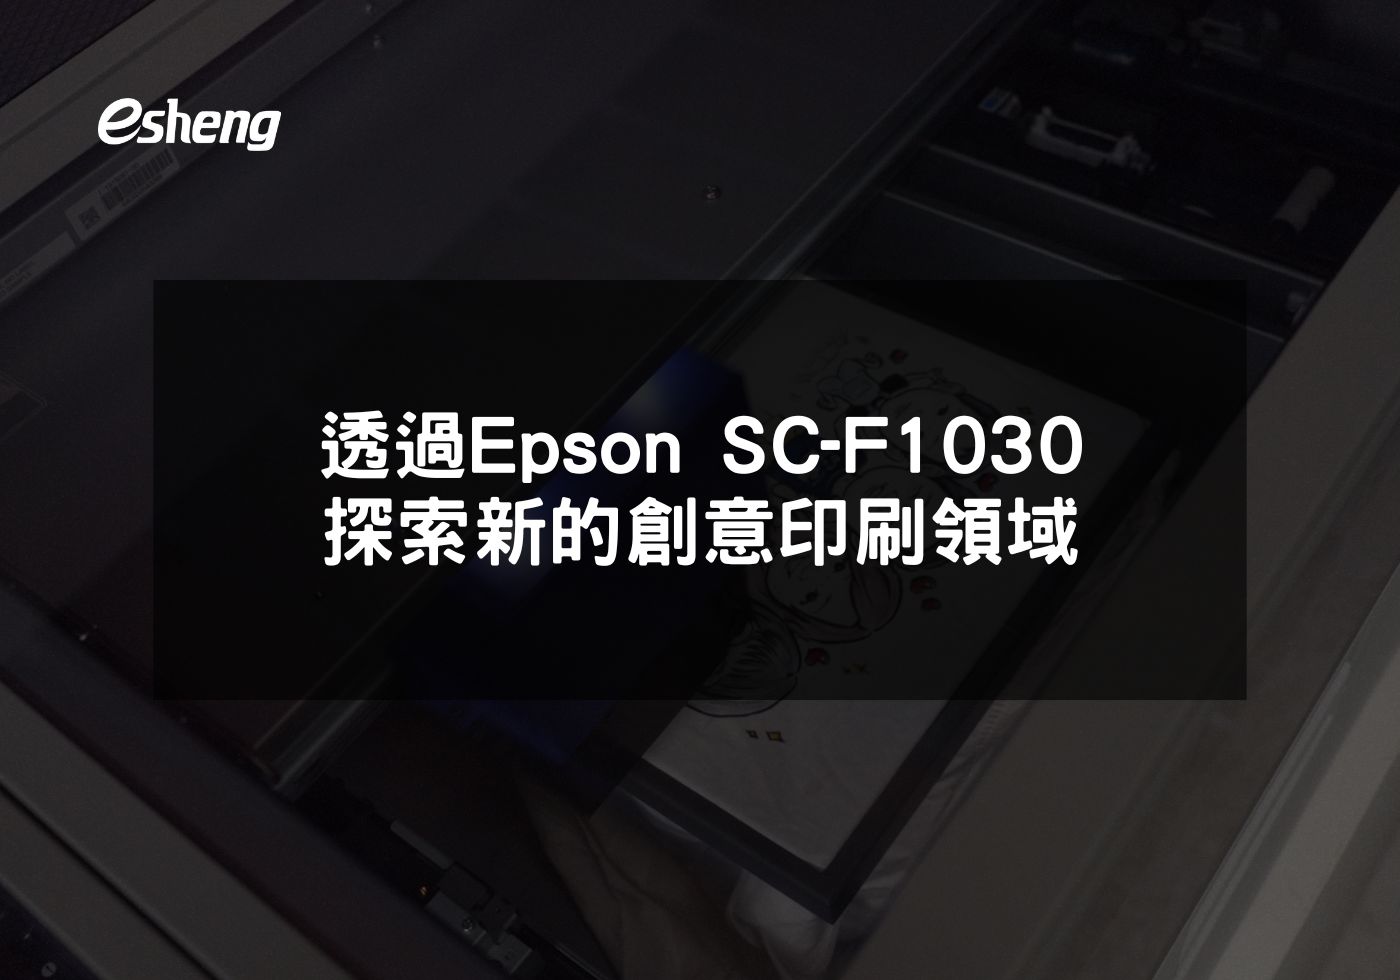 您目前正在查看 透過Epson SC-F1030探索新的創意印刷領域